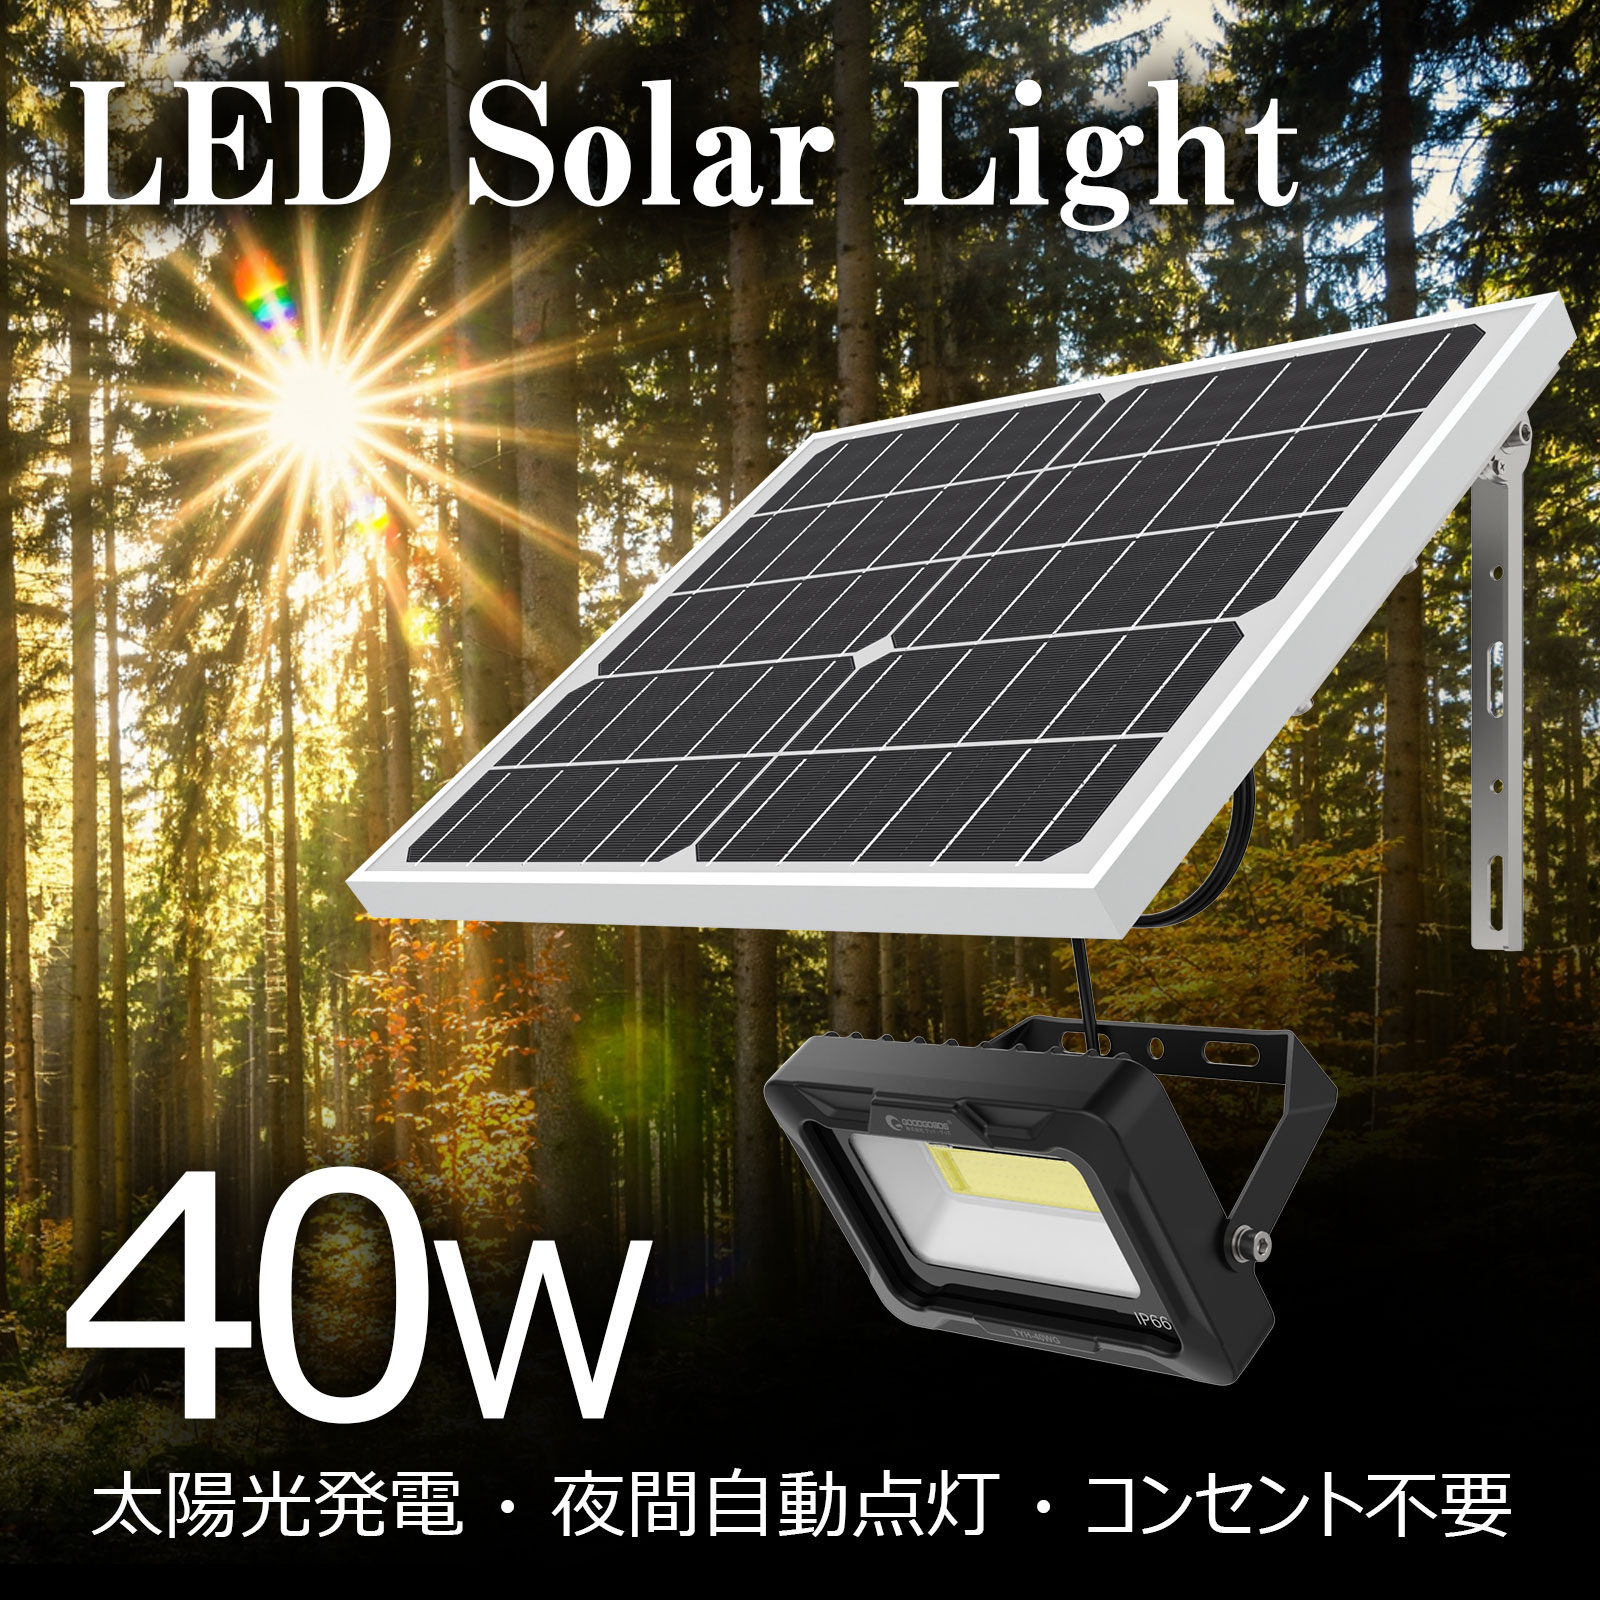 実用新案登録 LEDソーラーライト 屋外 明るい 40w ソーラー投光器 太陽光発電システム ガーデンライト 電気料金無料